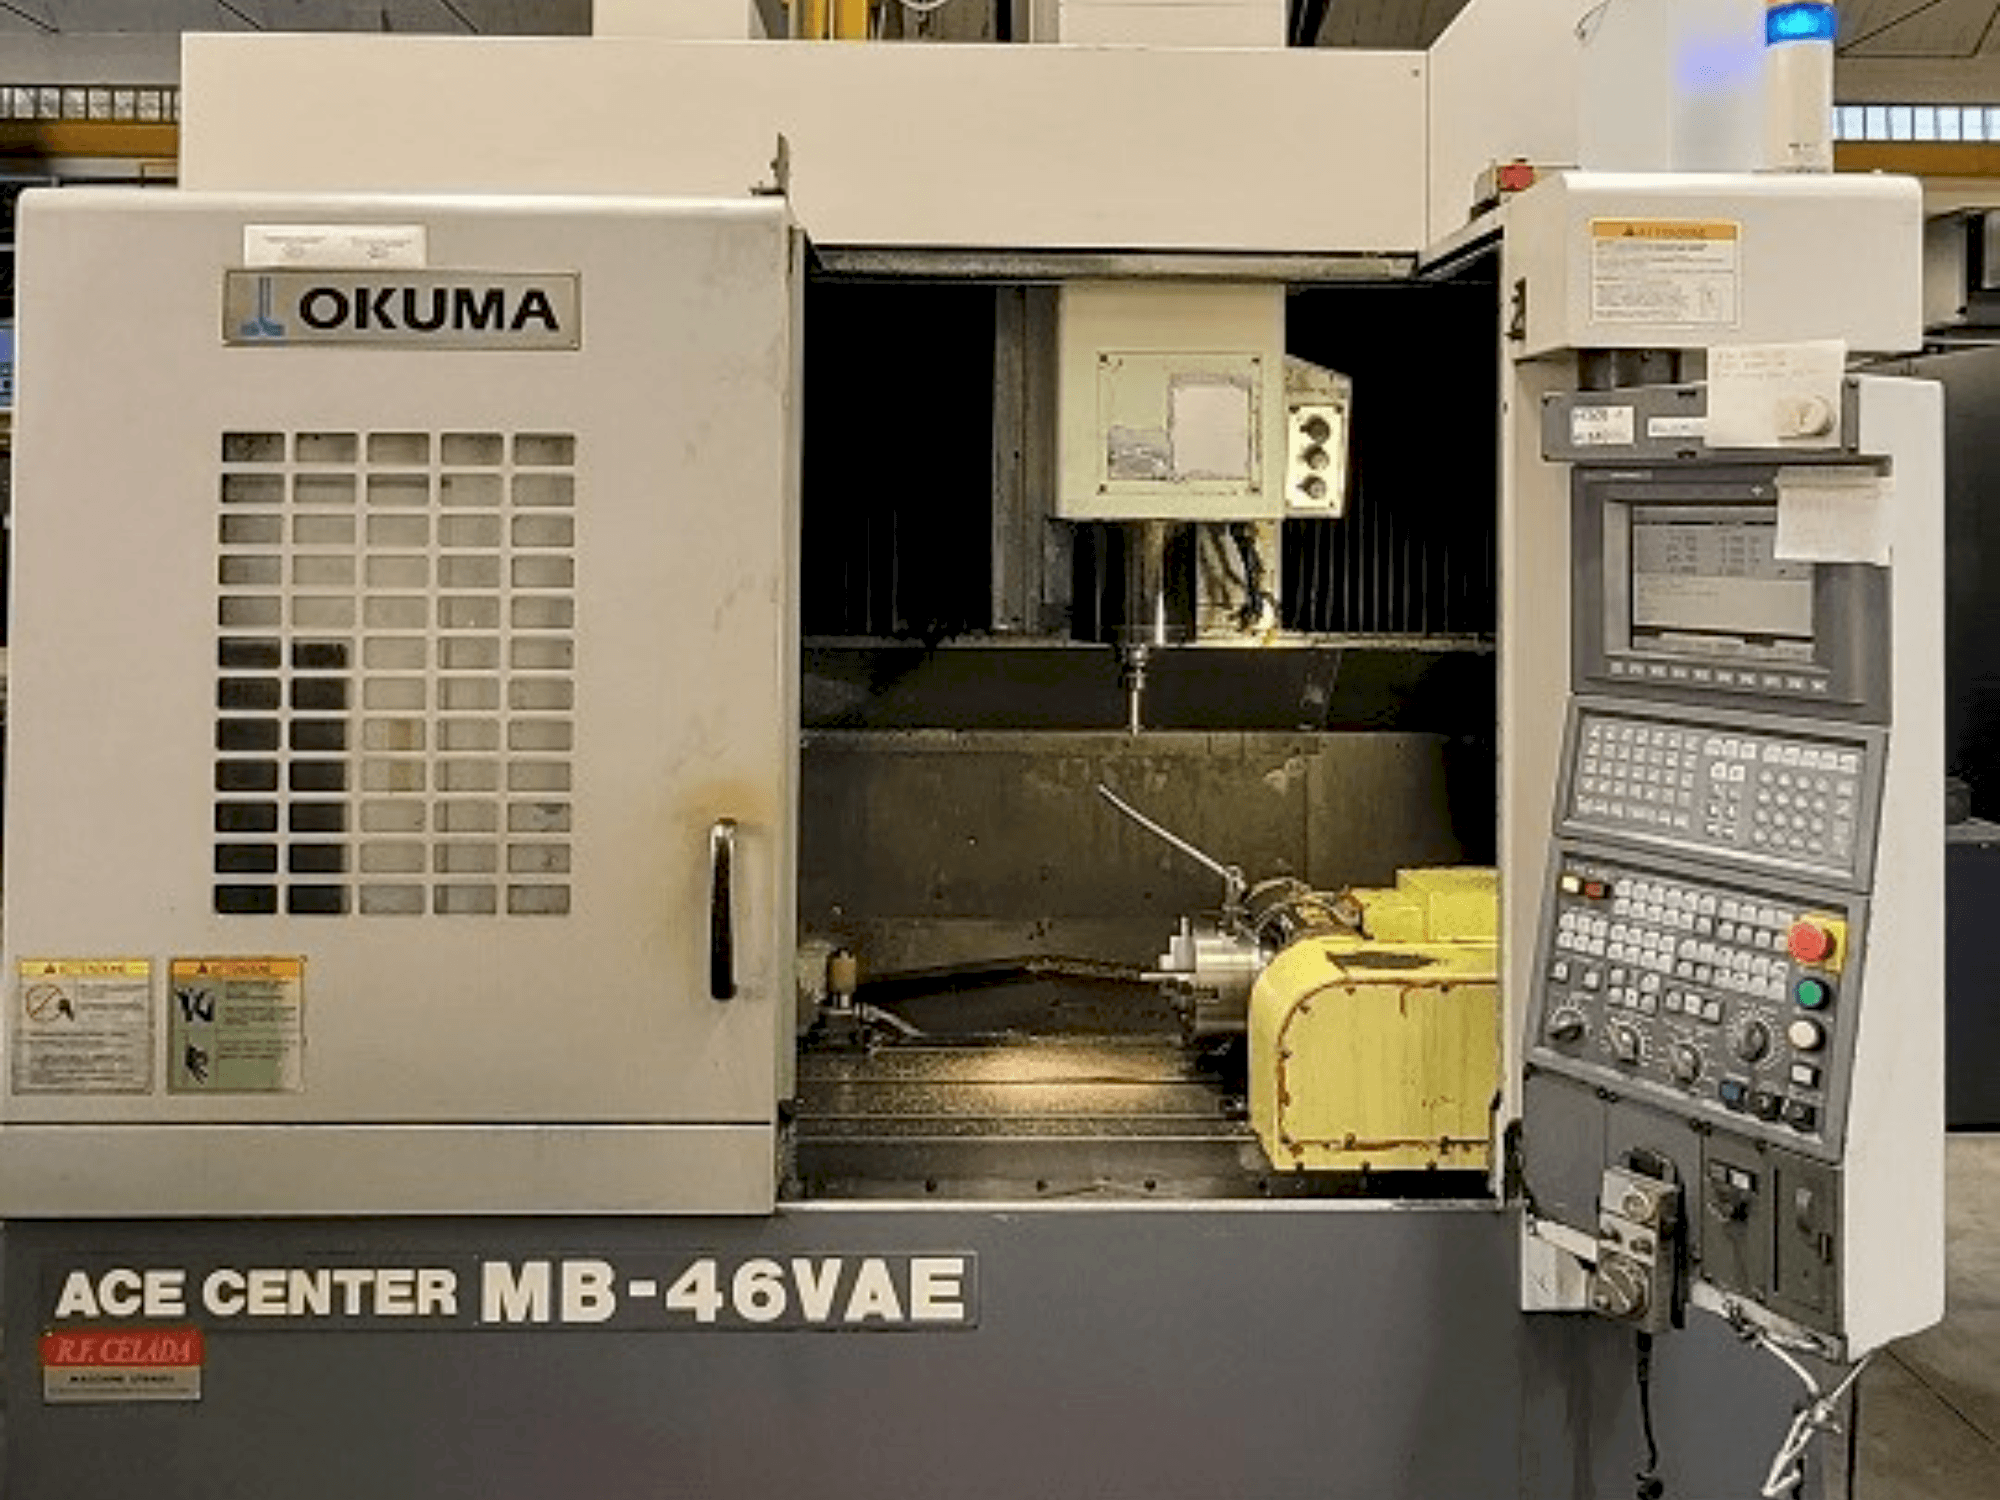 Vista frontale della macchina Okuma MB-46VAE